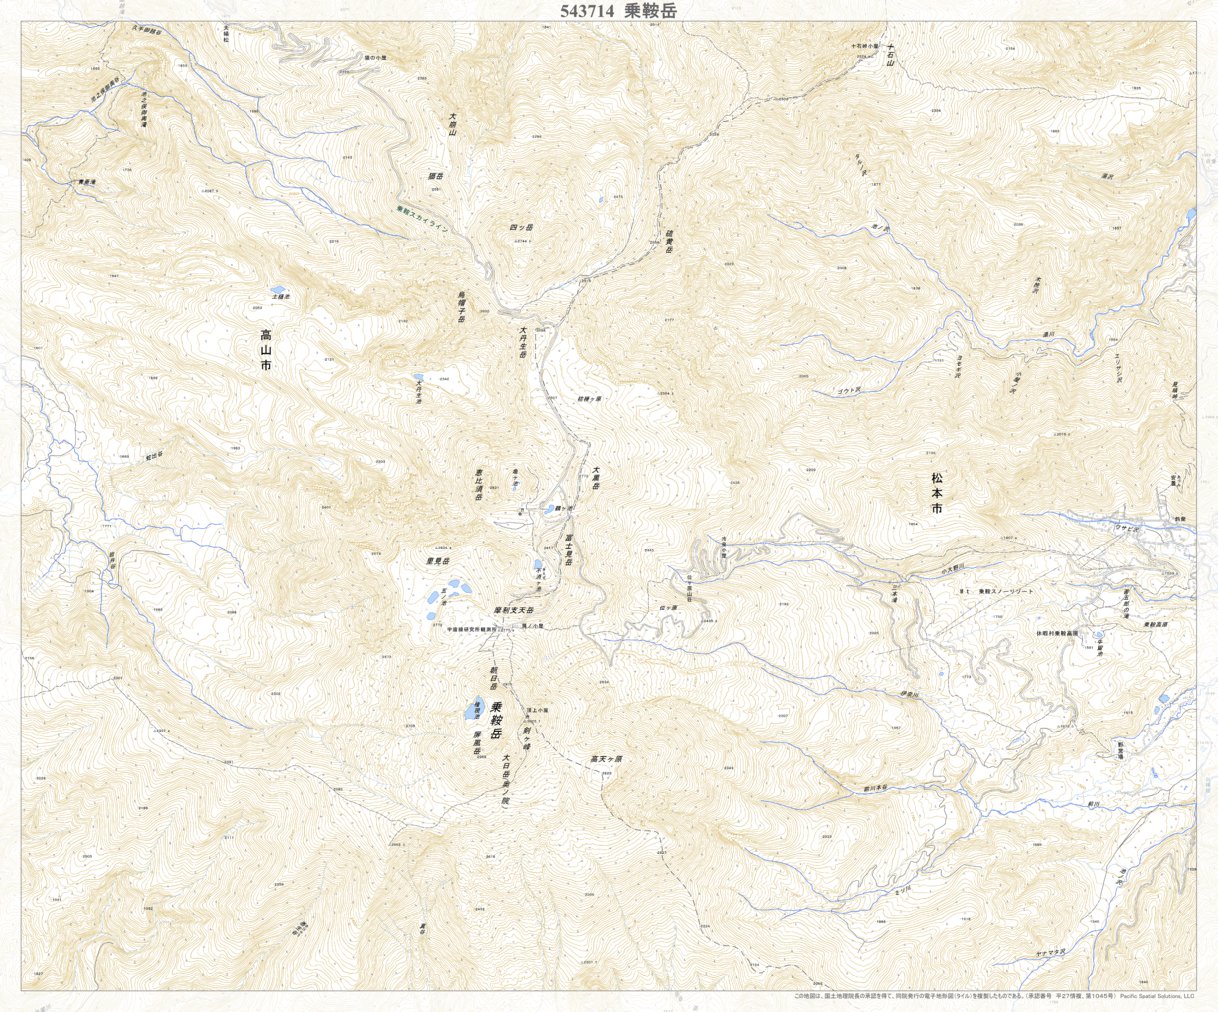 543714 乗鞍岳（のりくらだけ Norikuradake）, 地形図 Map by Pacific 